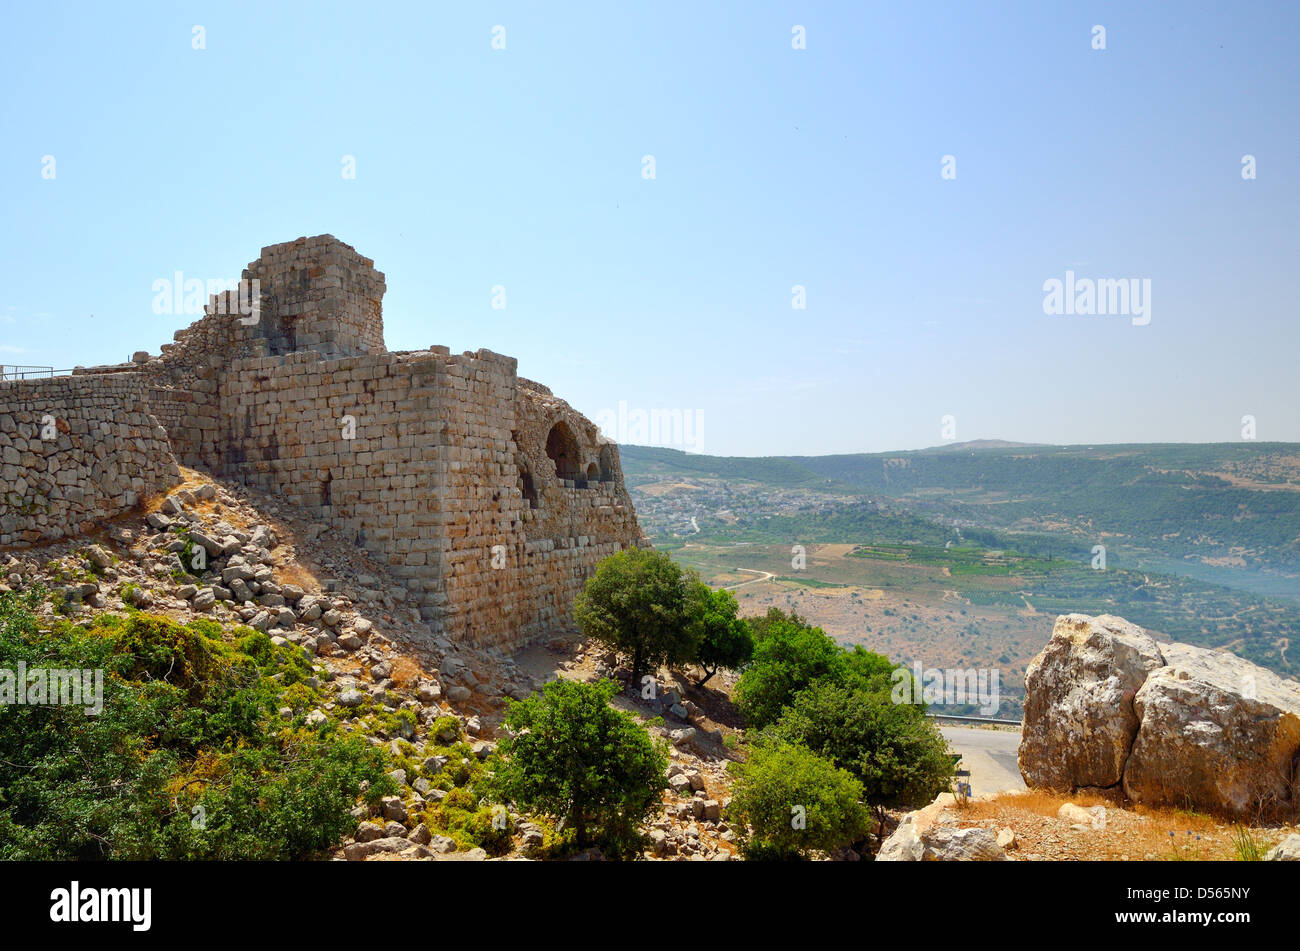 La forteresse de Nimrod(Mivtzar Nimrod) est une forteresse médiévale située dans le nord du plateau du Golan, Israël. Banque D'Images